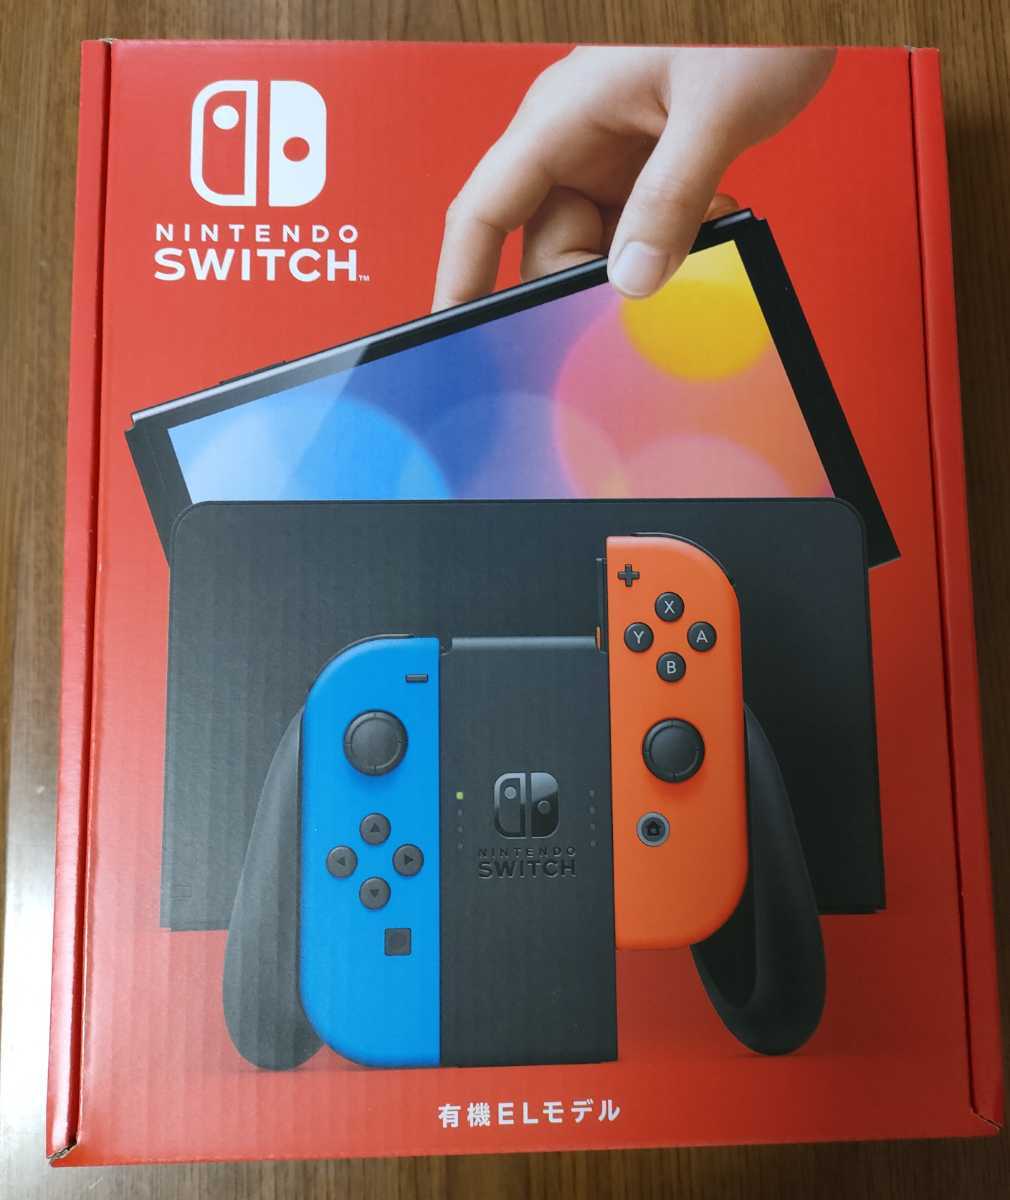 ースイッチ】 Nintendo Switch - ほぼ未使用 美品 Switch 新型 ネオン